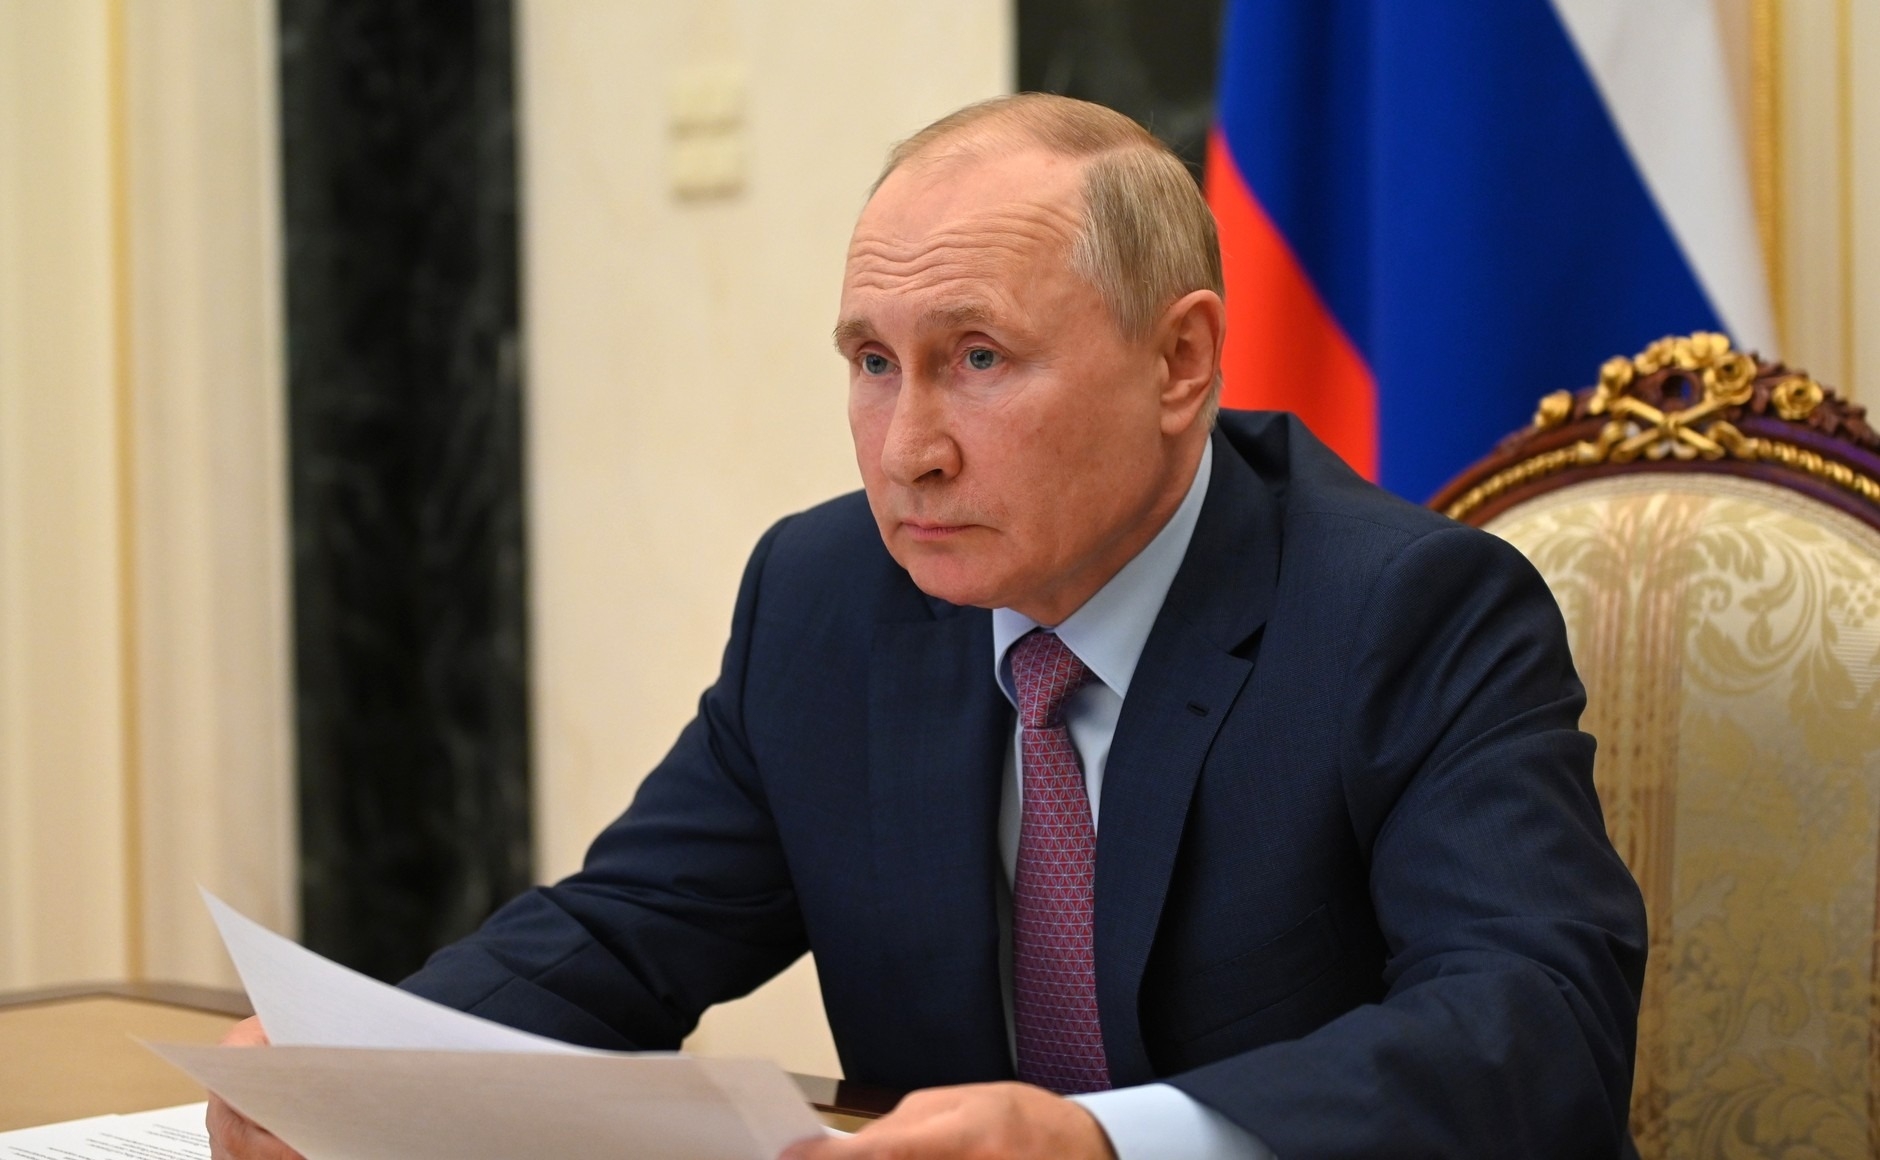 Песков: Путин проведет оперативное совещание с постоянными членами Совбеза